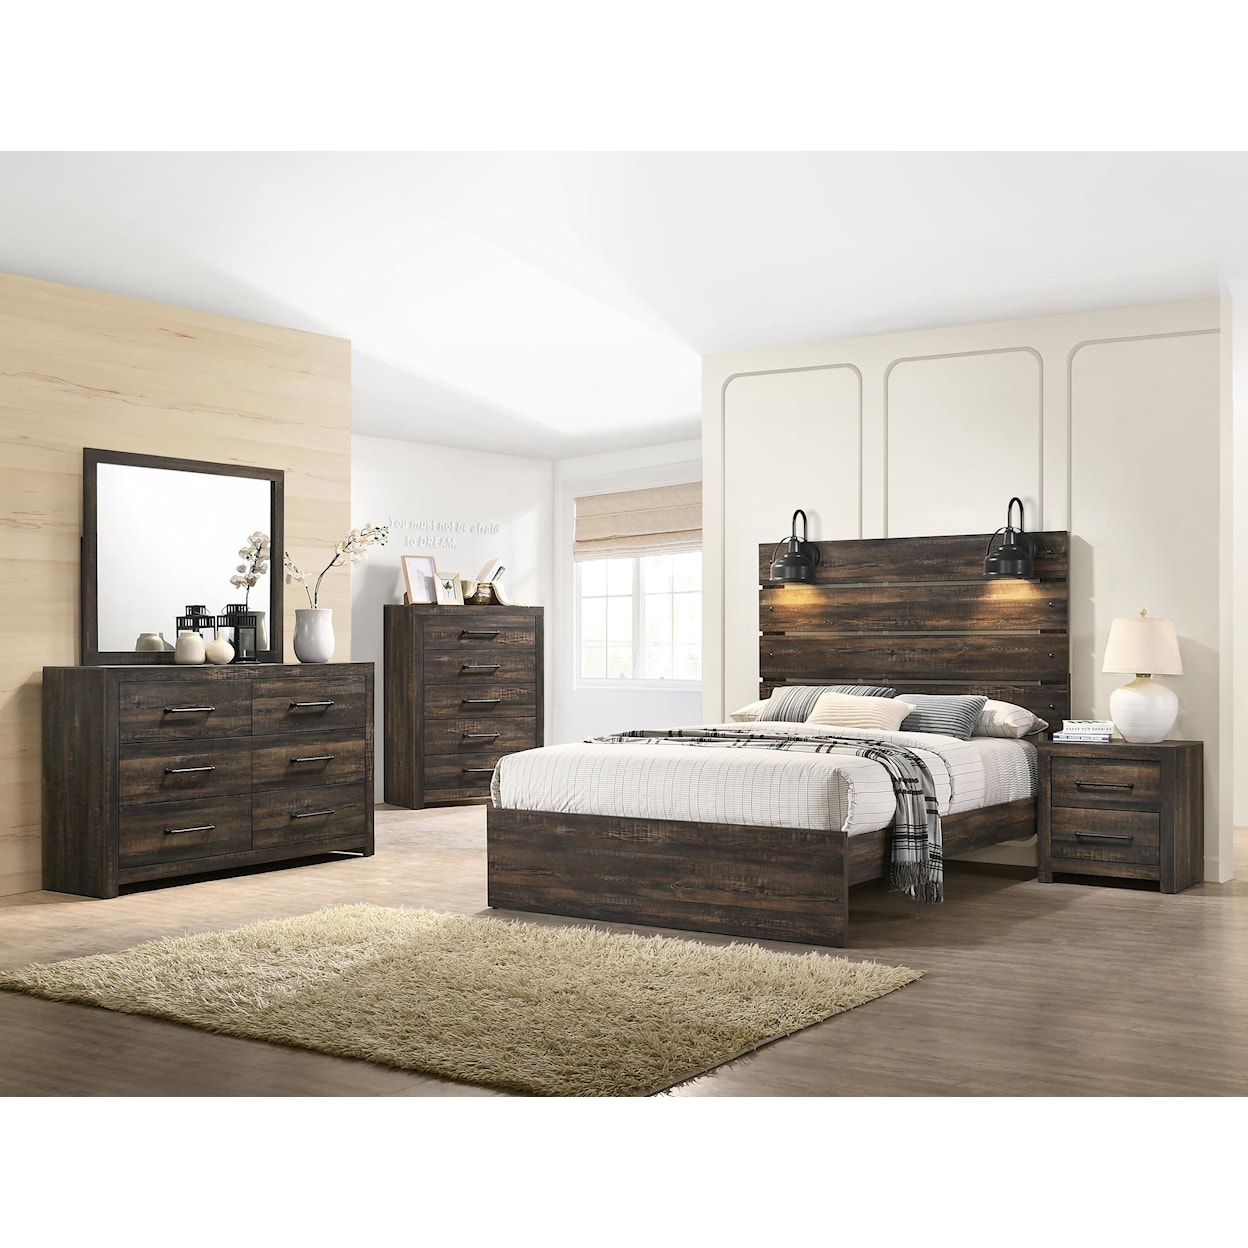 Lifestyle 0399 5 Piece Queen Bedroom Set with Dresser